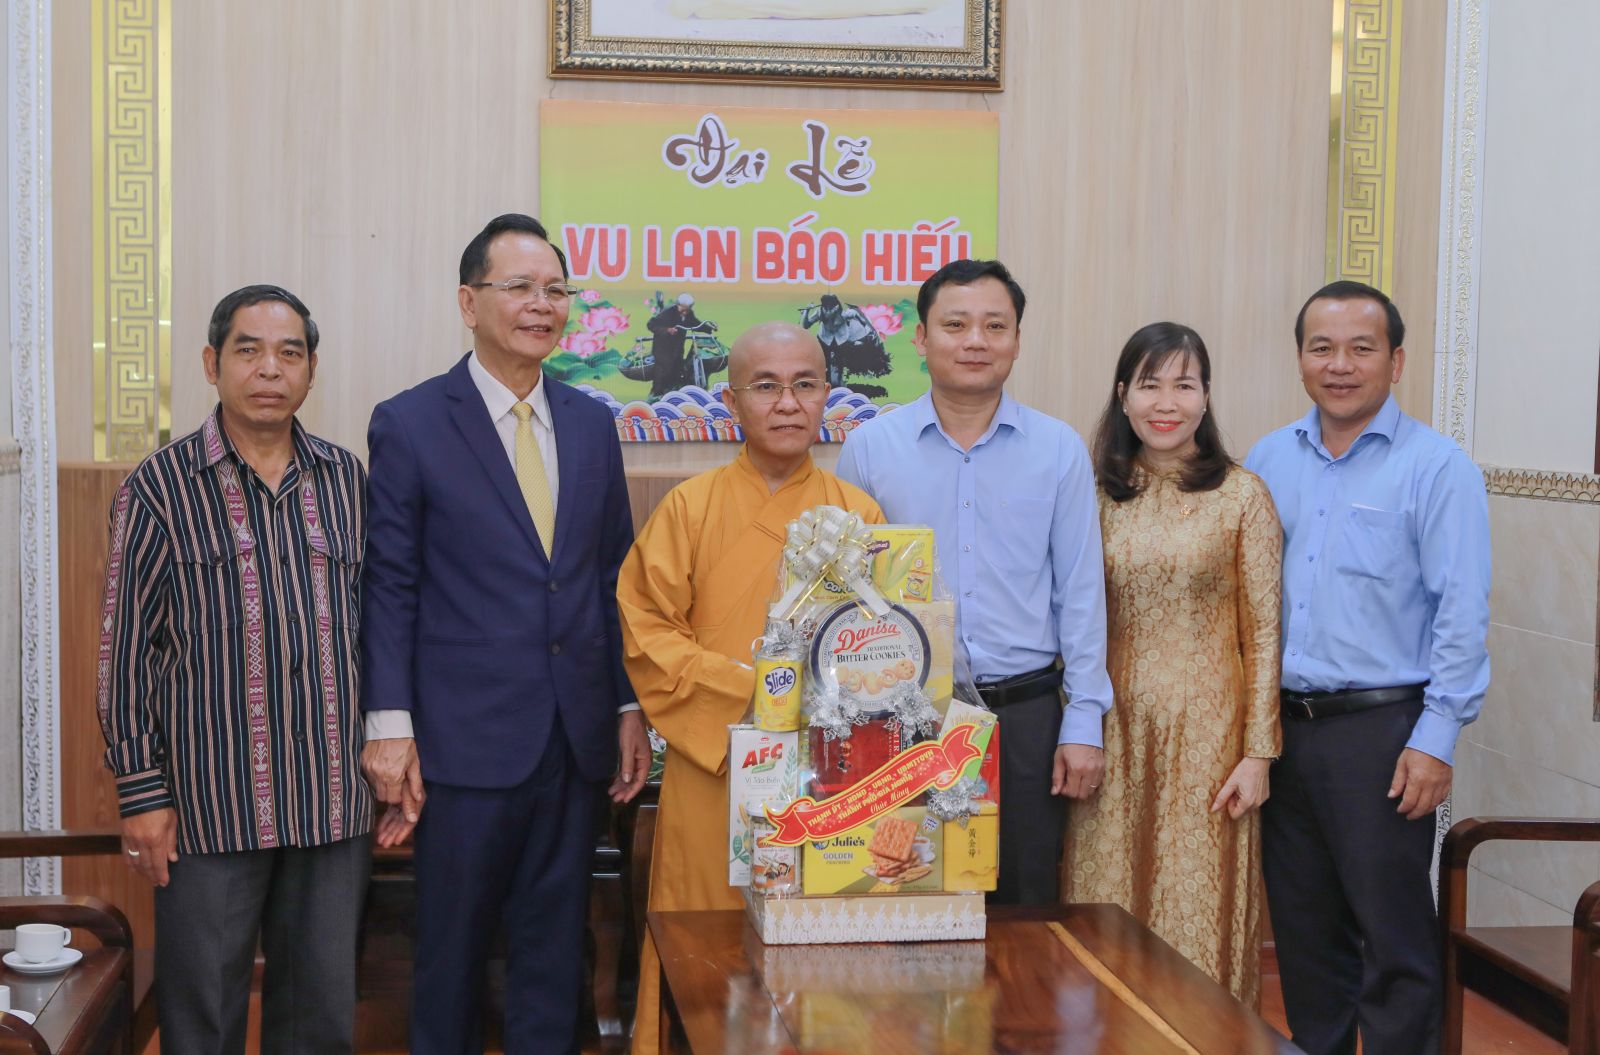 Bí thư Tỉnh ủy Đắk Nông thăm chúc mừng Đại lễ Vu lan Báo hiếu tại chùa Pháp Hoa 